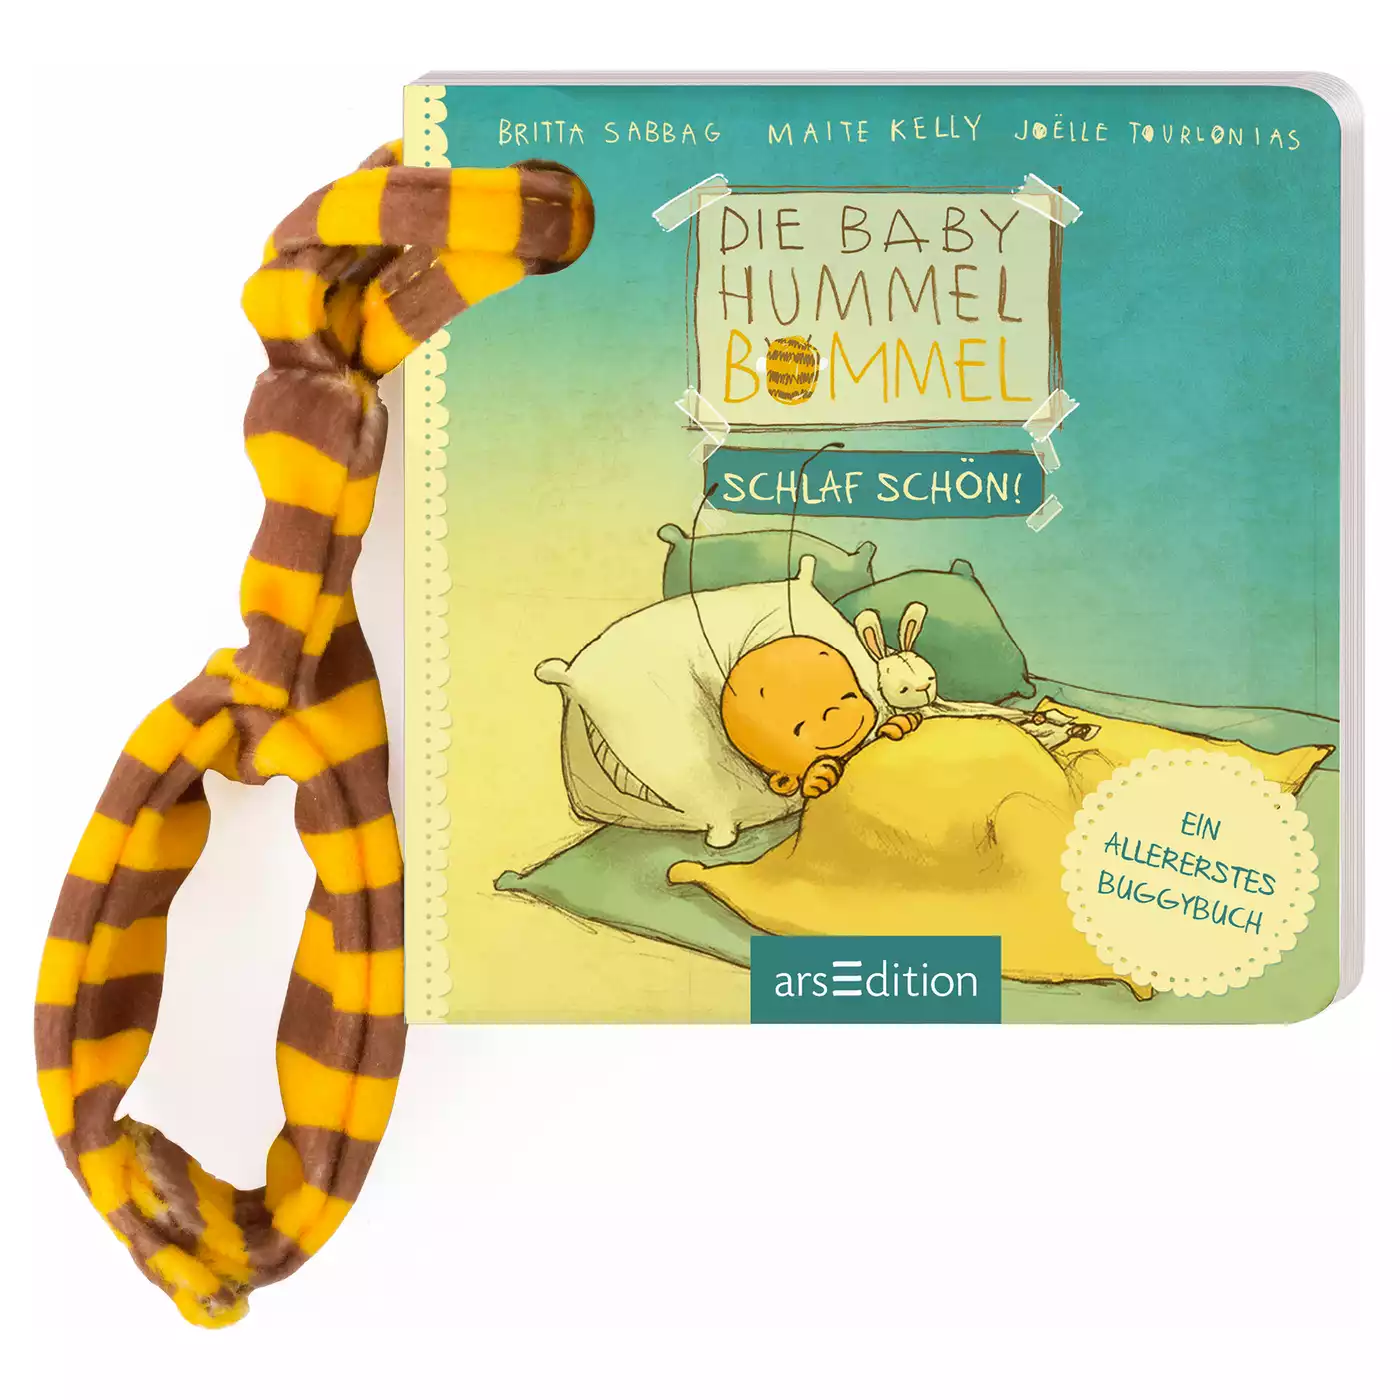 Die Baby Hummel Bommel arsEdition 2000574913711 3